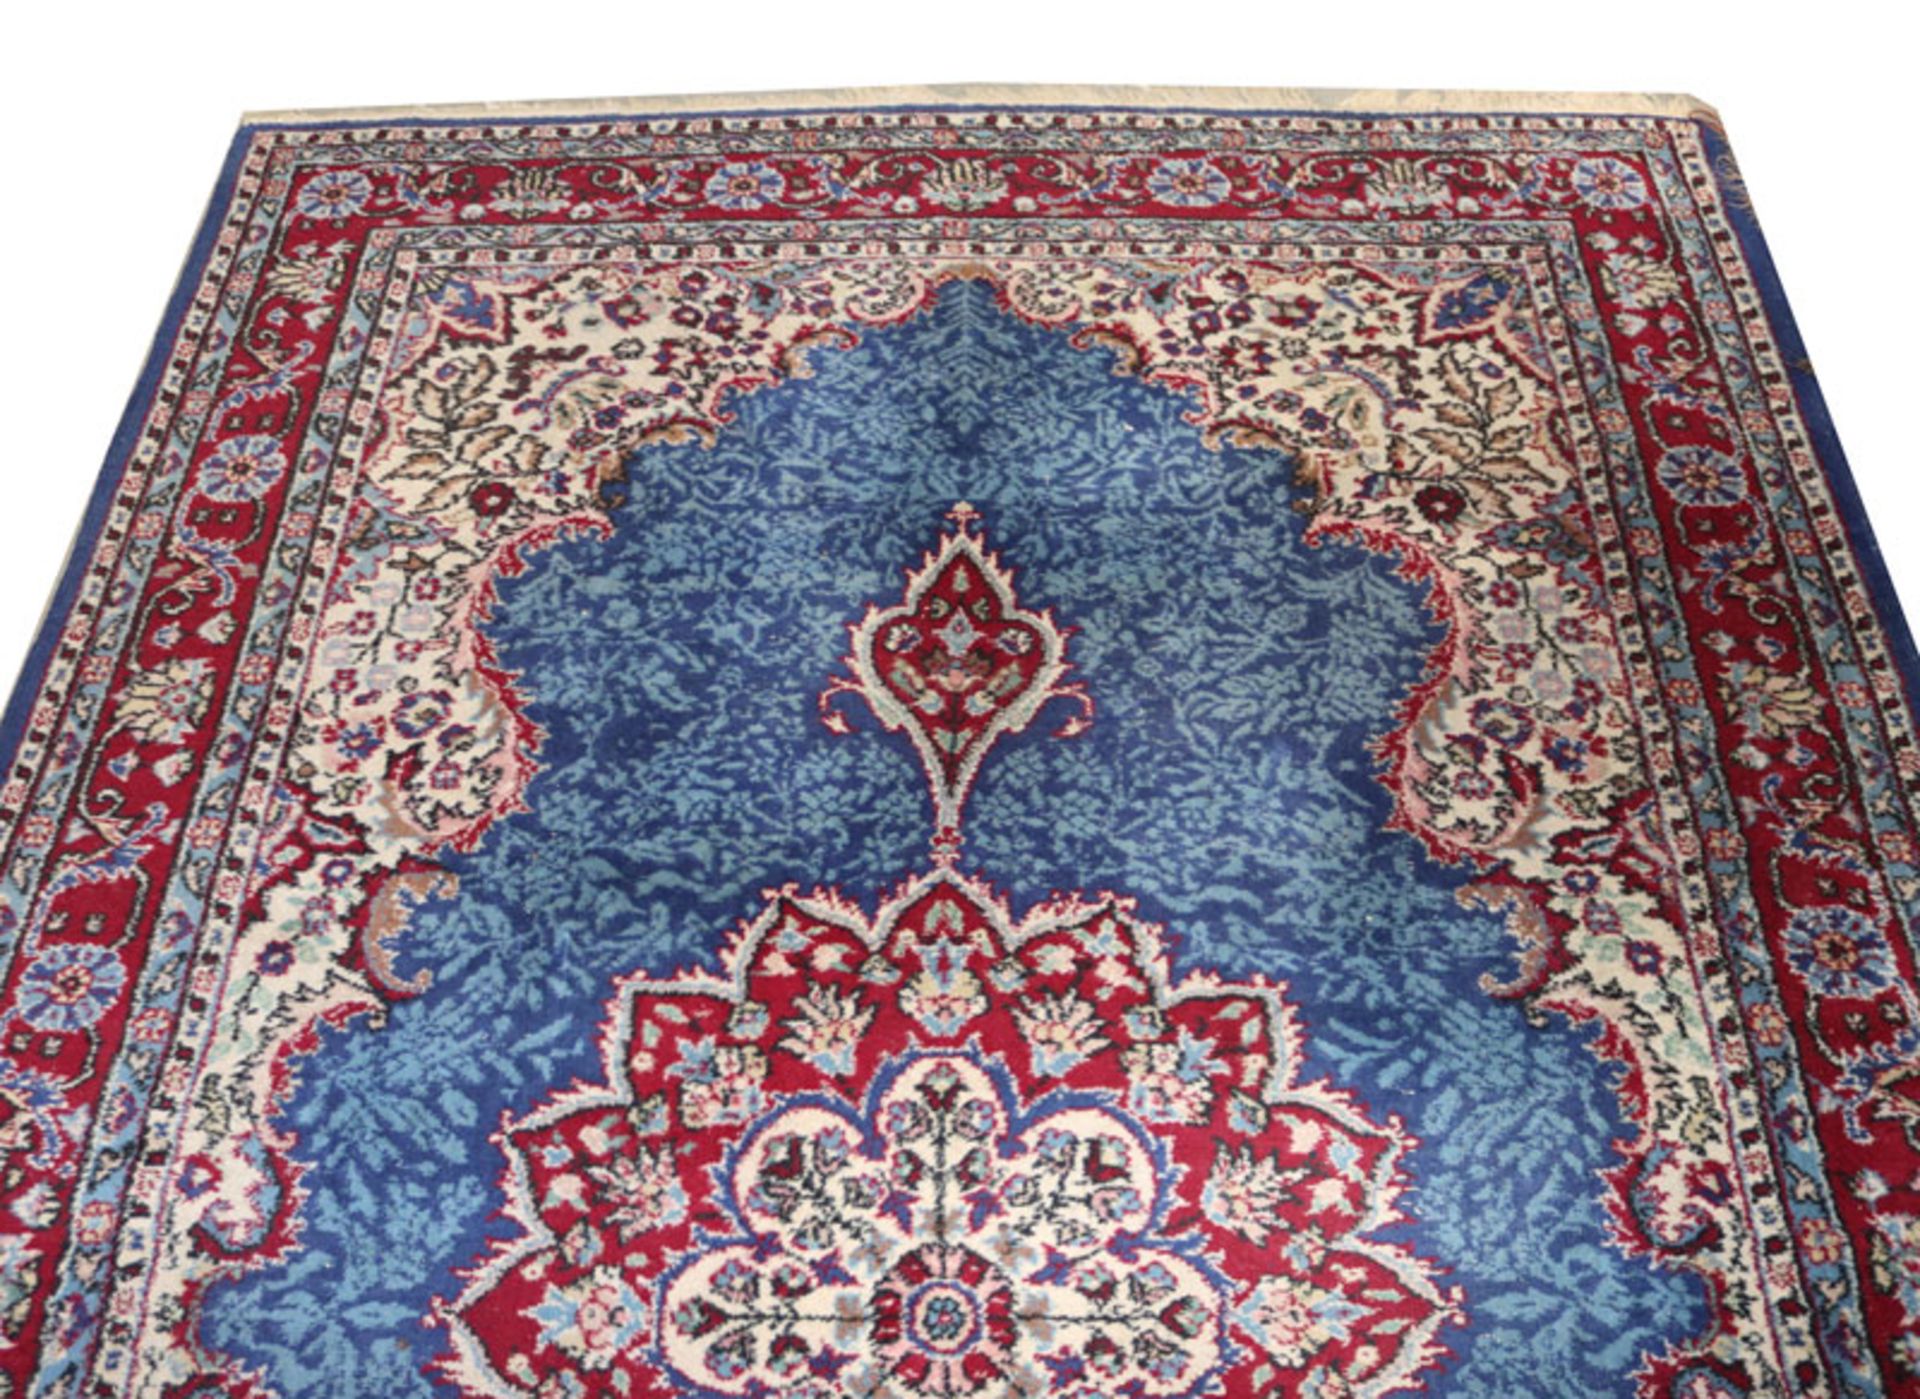 Teppich, Täbris, blau/beige/rot/bunt, Gebrauchsspuren, Fransen teils beschädigt, 337 cm x 218 cm